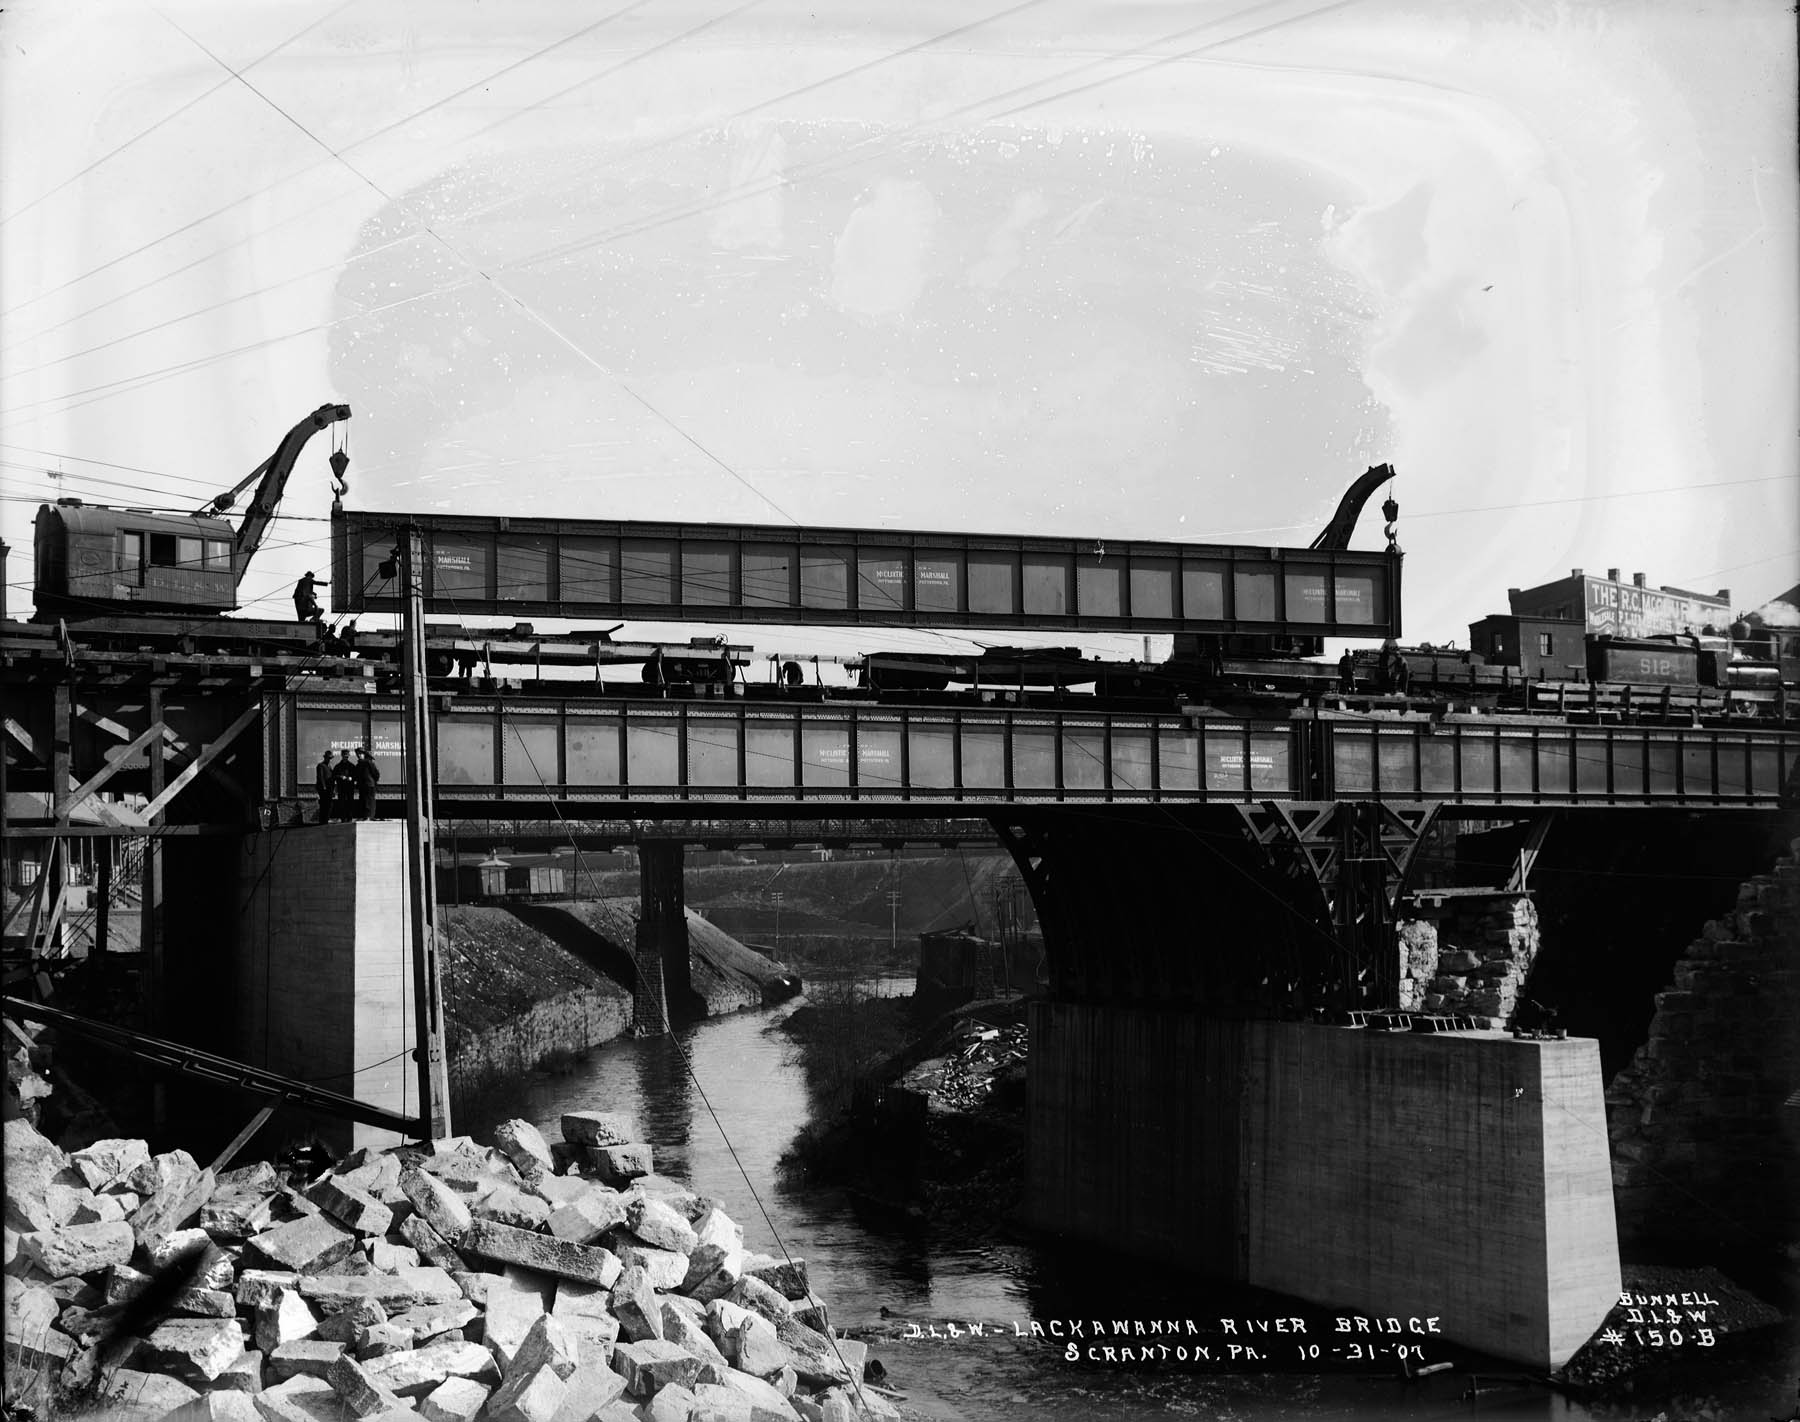 D. L. & W. - Lackawanna River Bridge, Scranton PA Delaware, Lackawanna, and Western Railroad Company